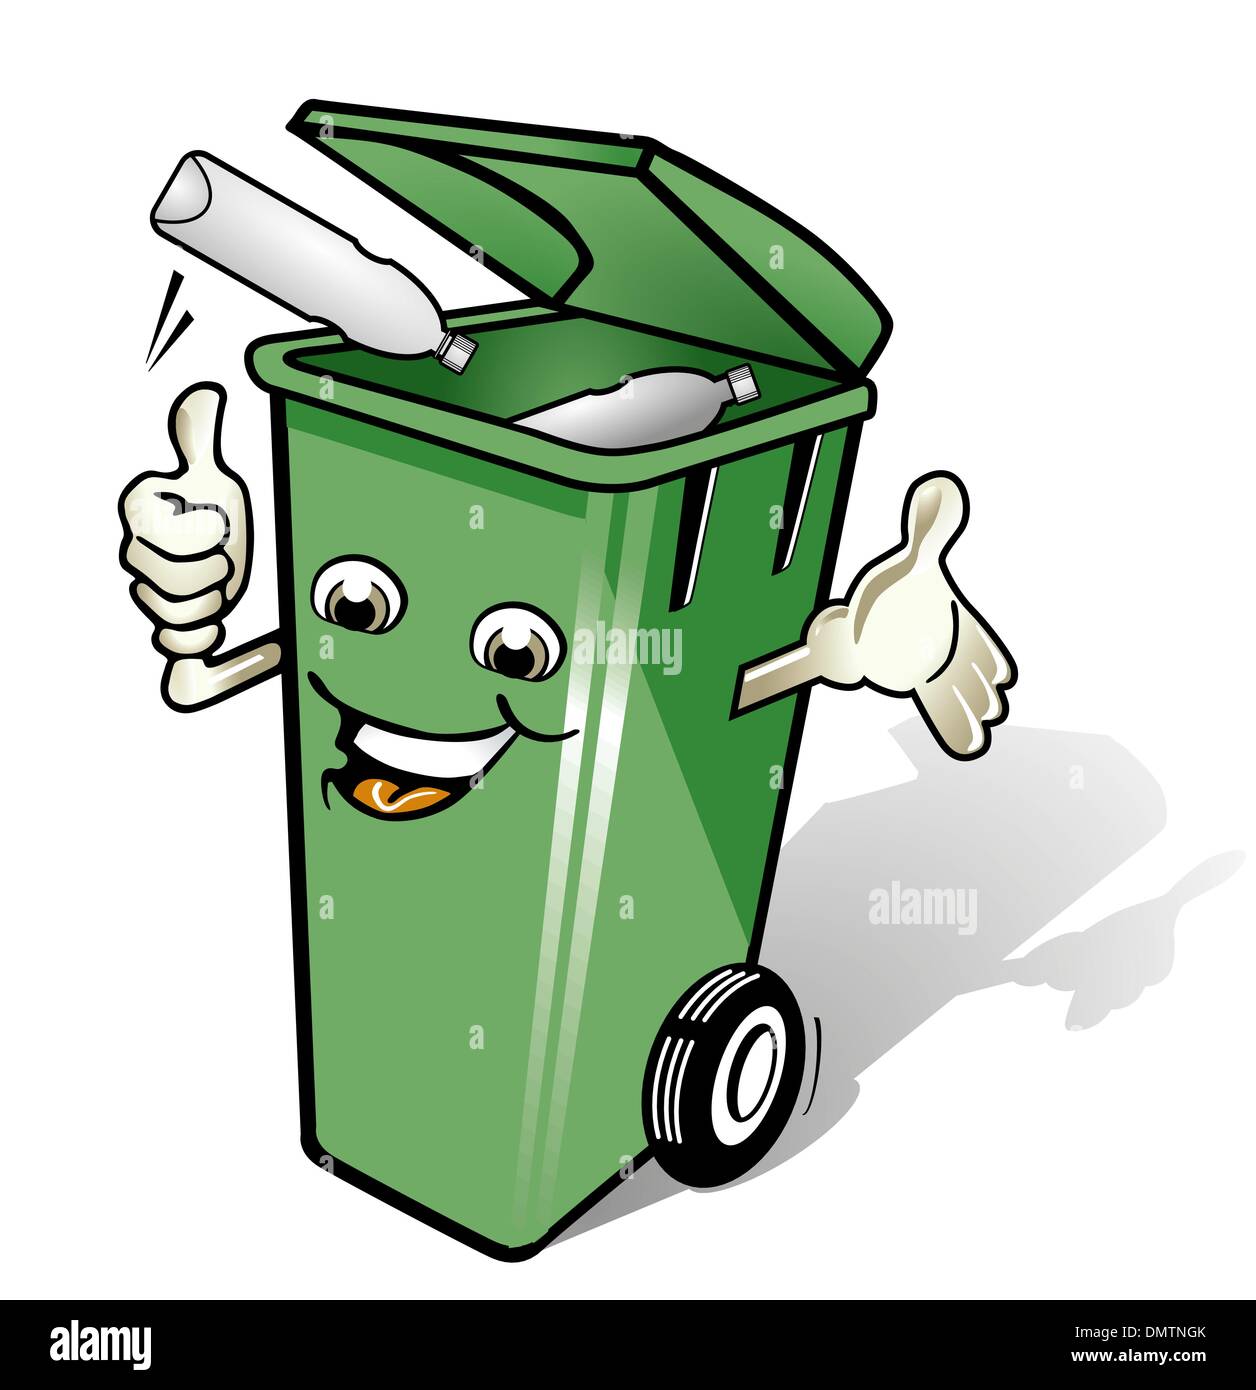 Recycle bins Stock Vector